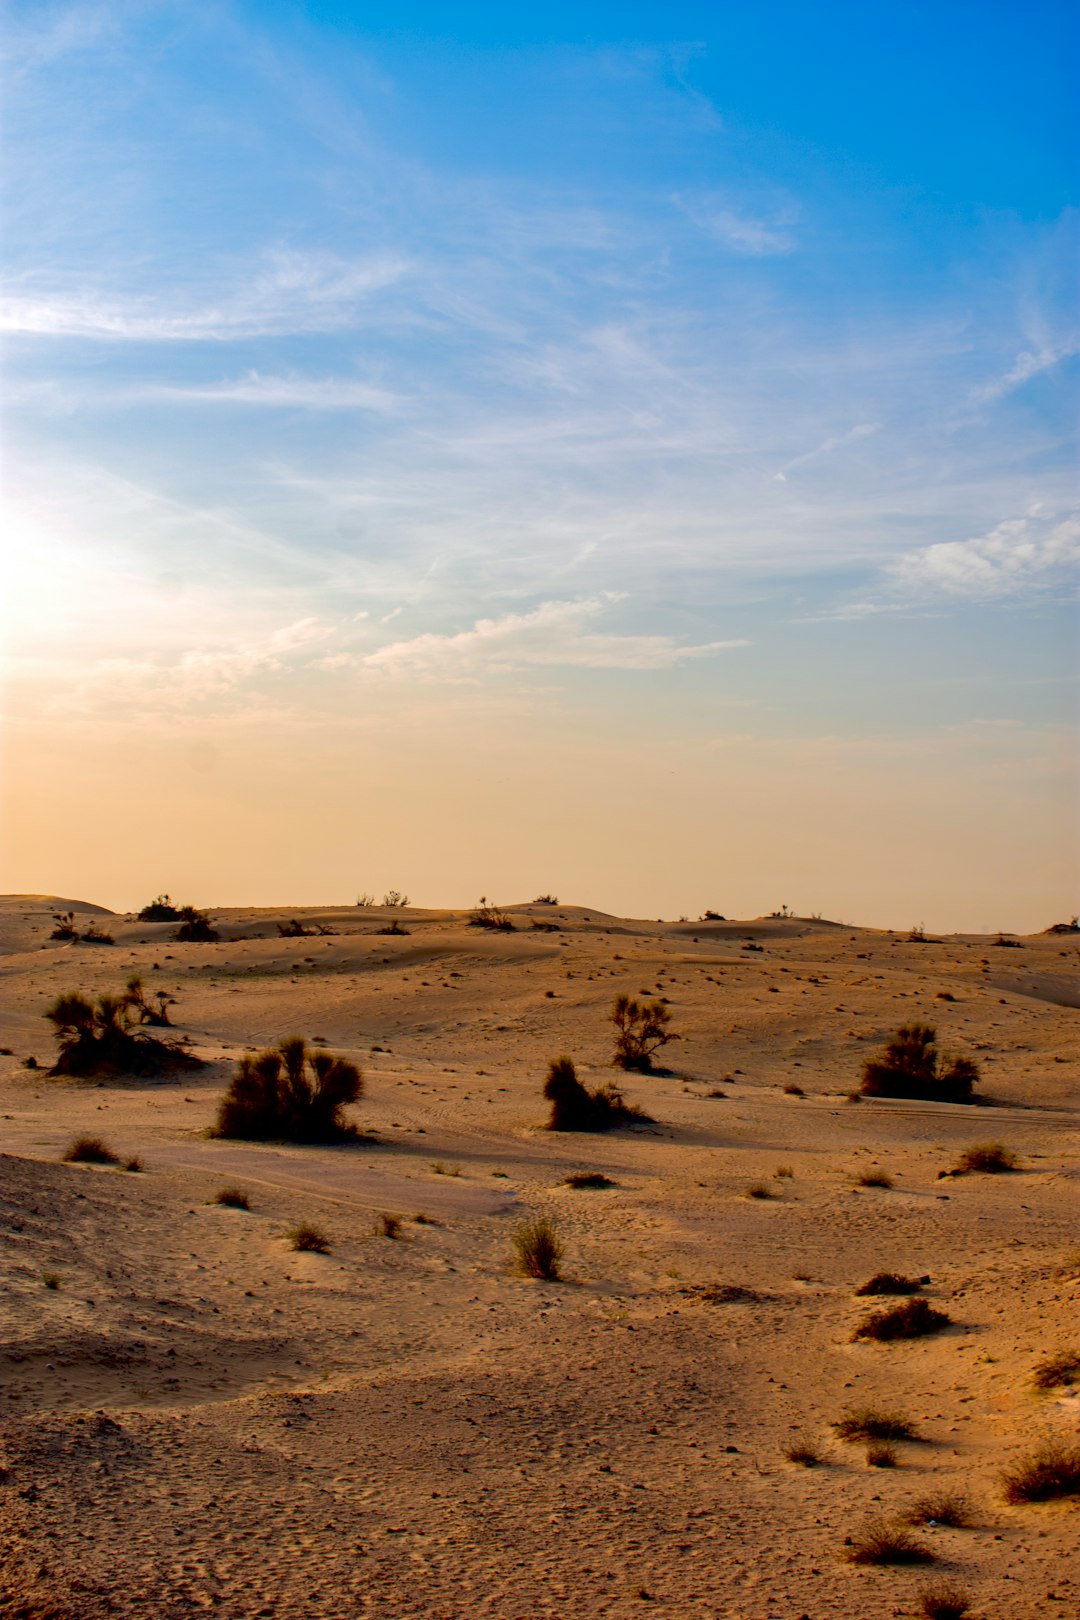 Desert photo spot Desert Safari Dubai - Dubai - United Arab Emirates Hatta